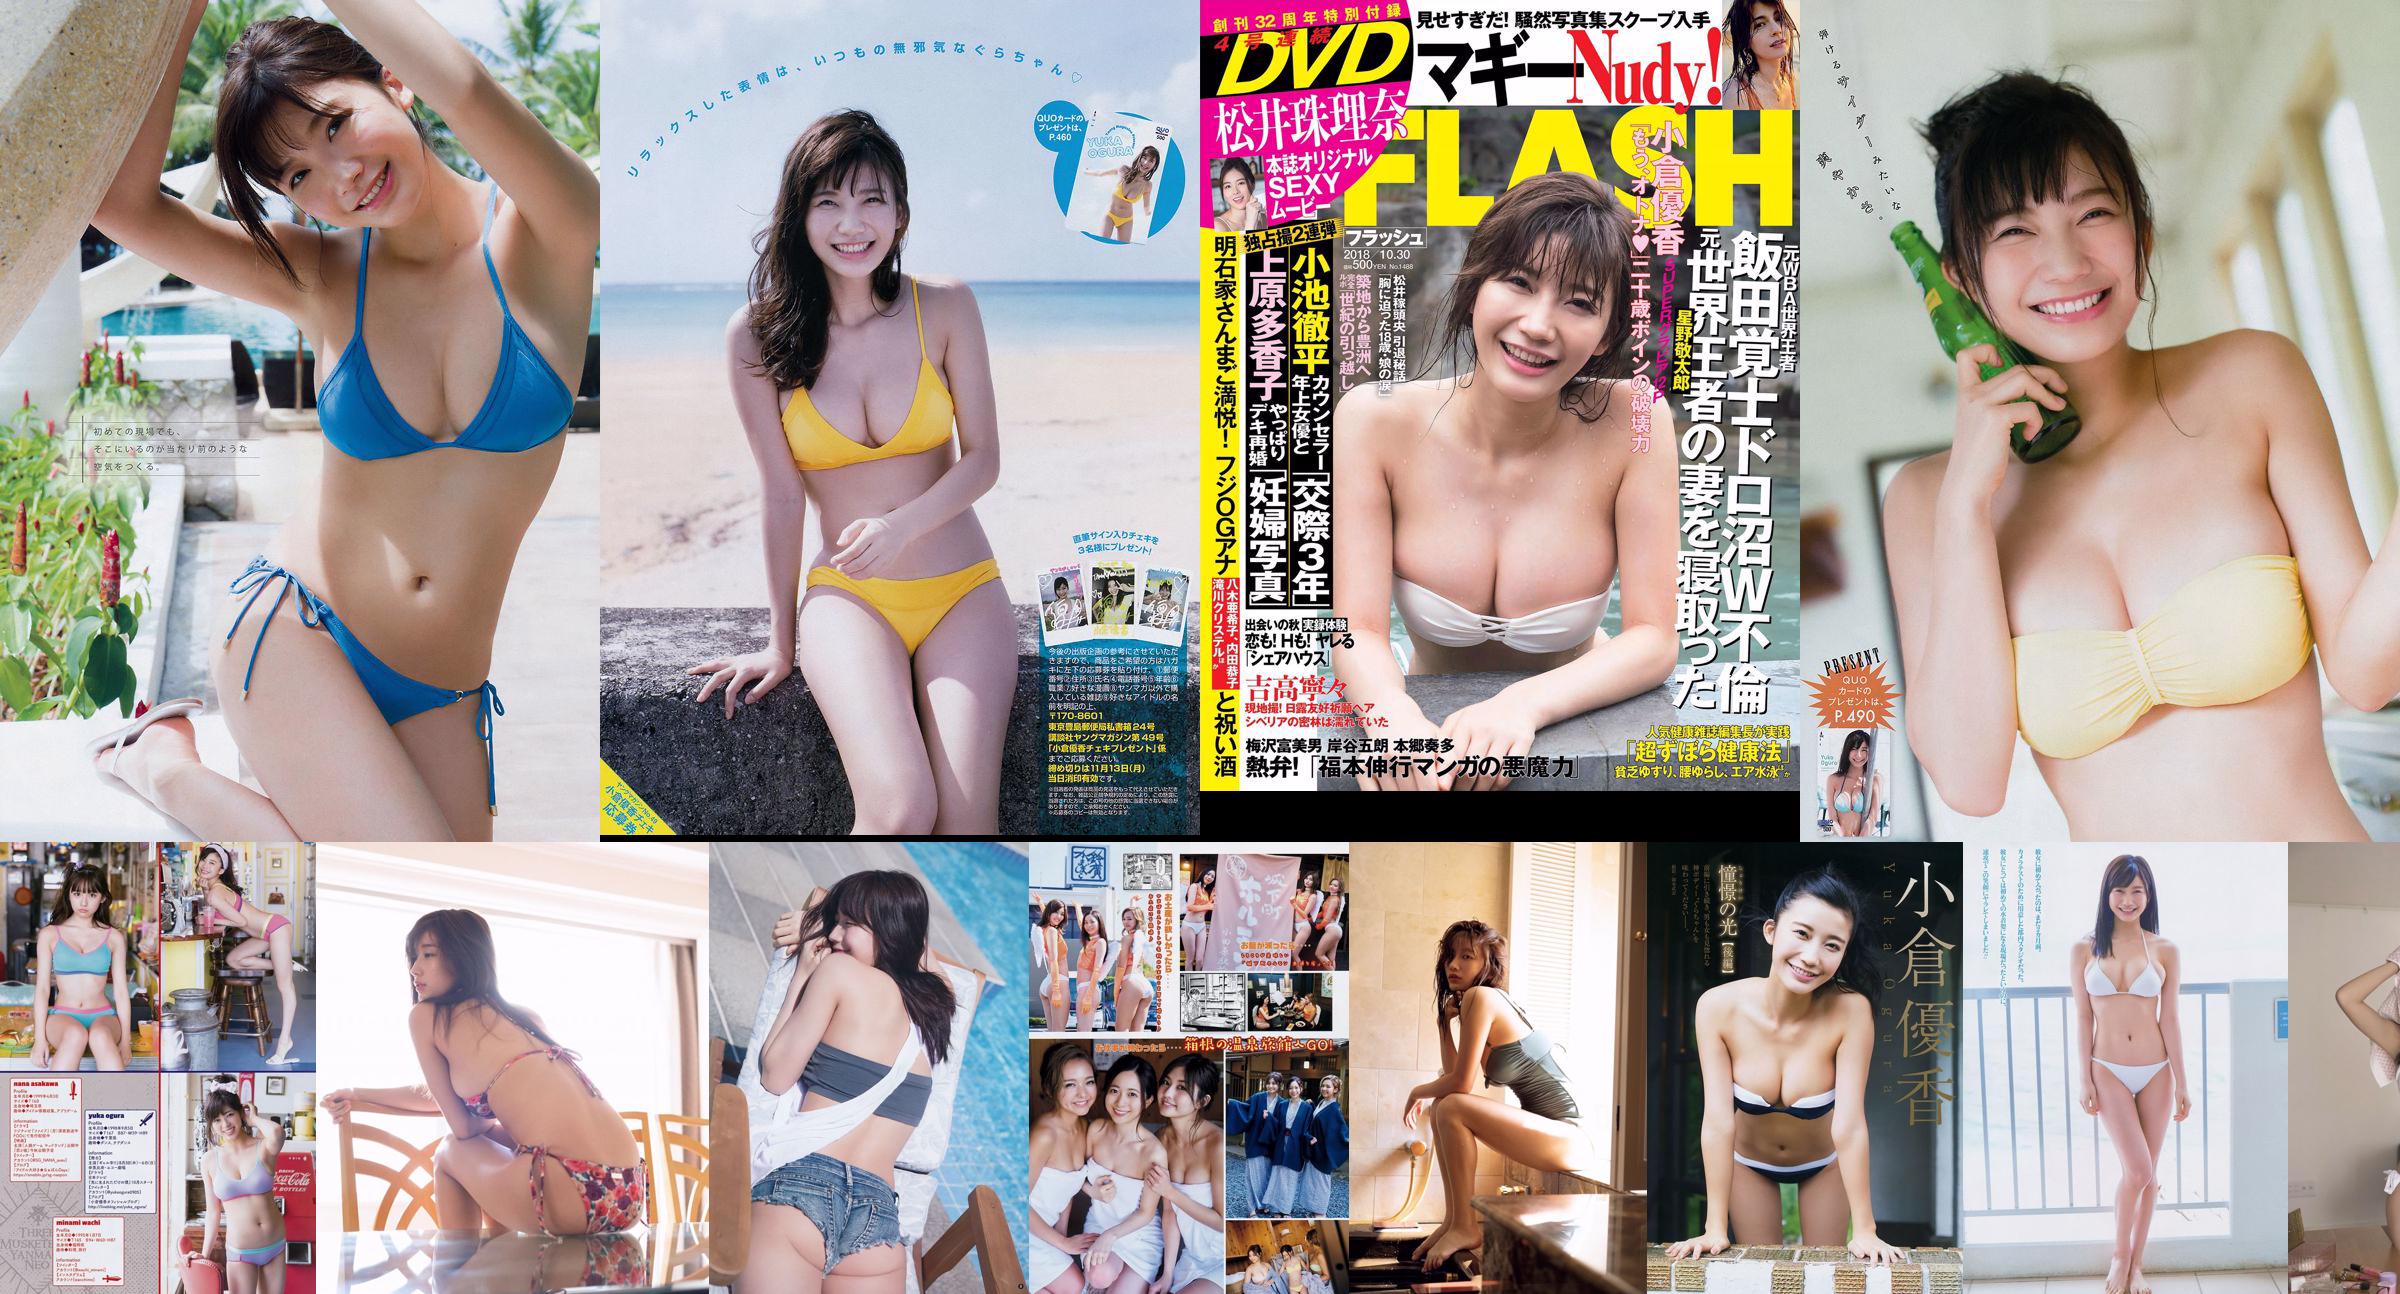 [Young Magazine] Yuka Ogura 2018 No.21-22 Photograph No.97f6ad Page 6